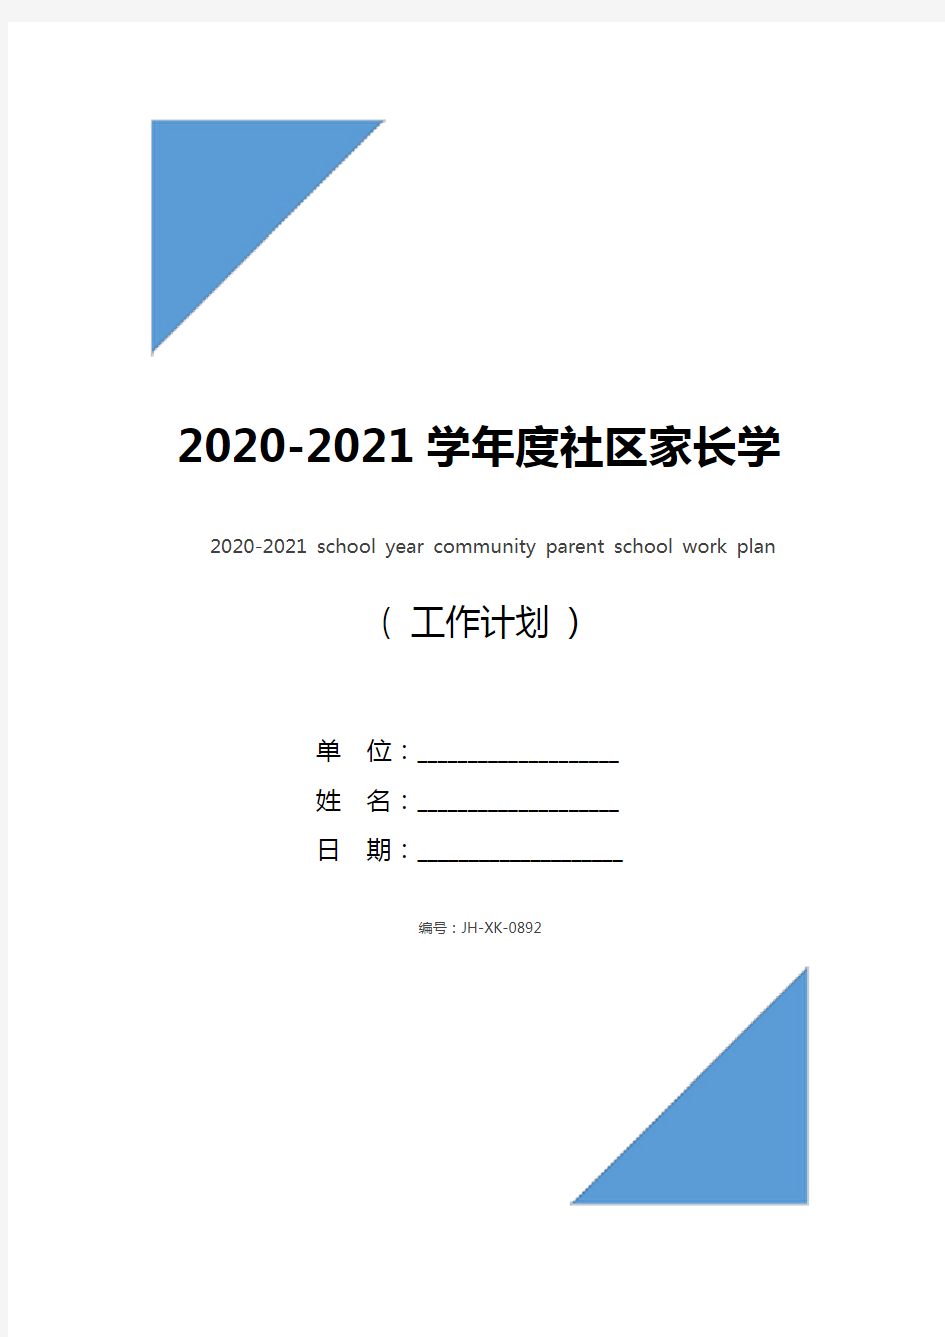 2020-2021学年度社区家长学校工作计划(通用版)